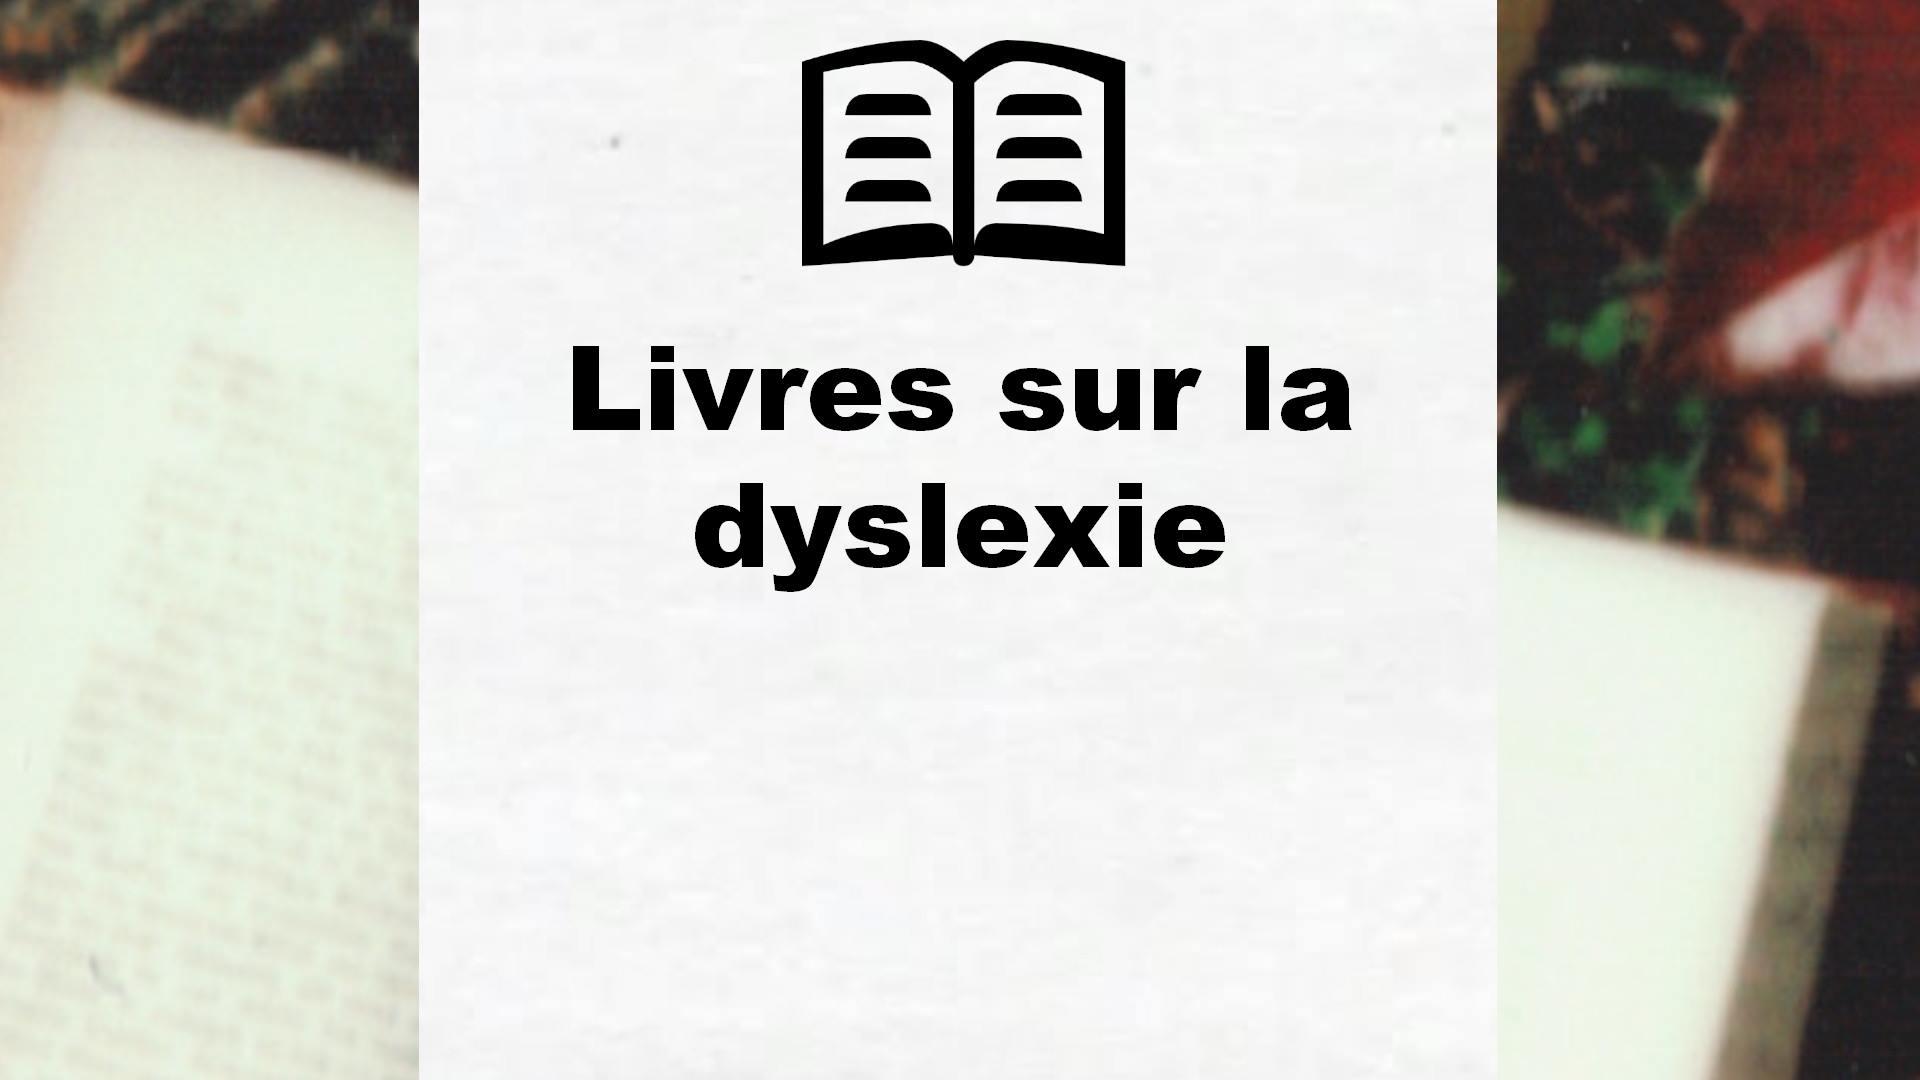 Livres sur la dyslexie